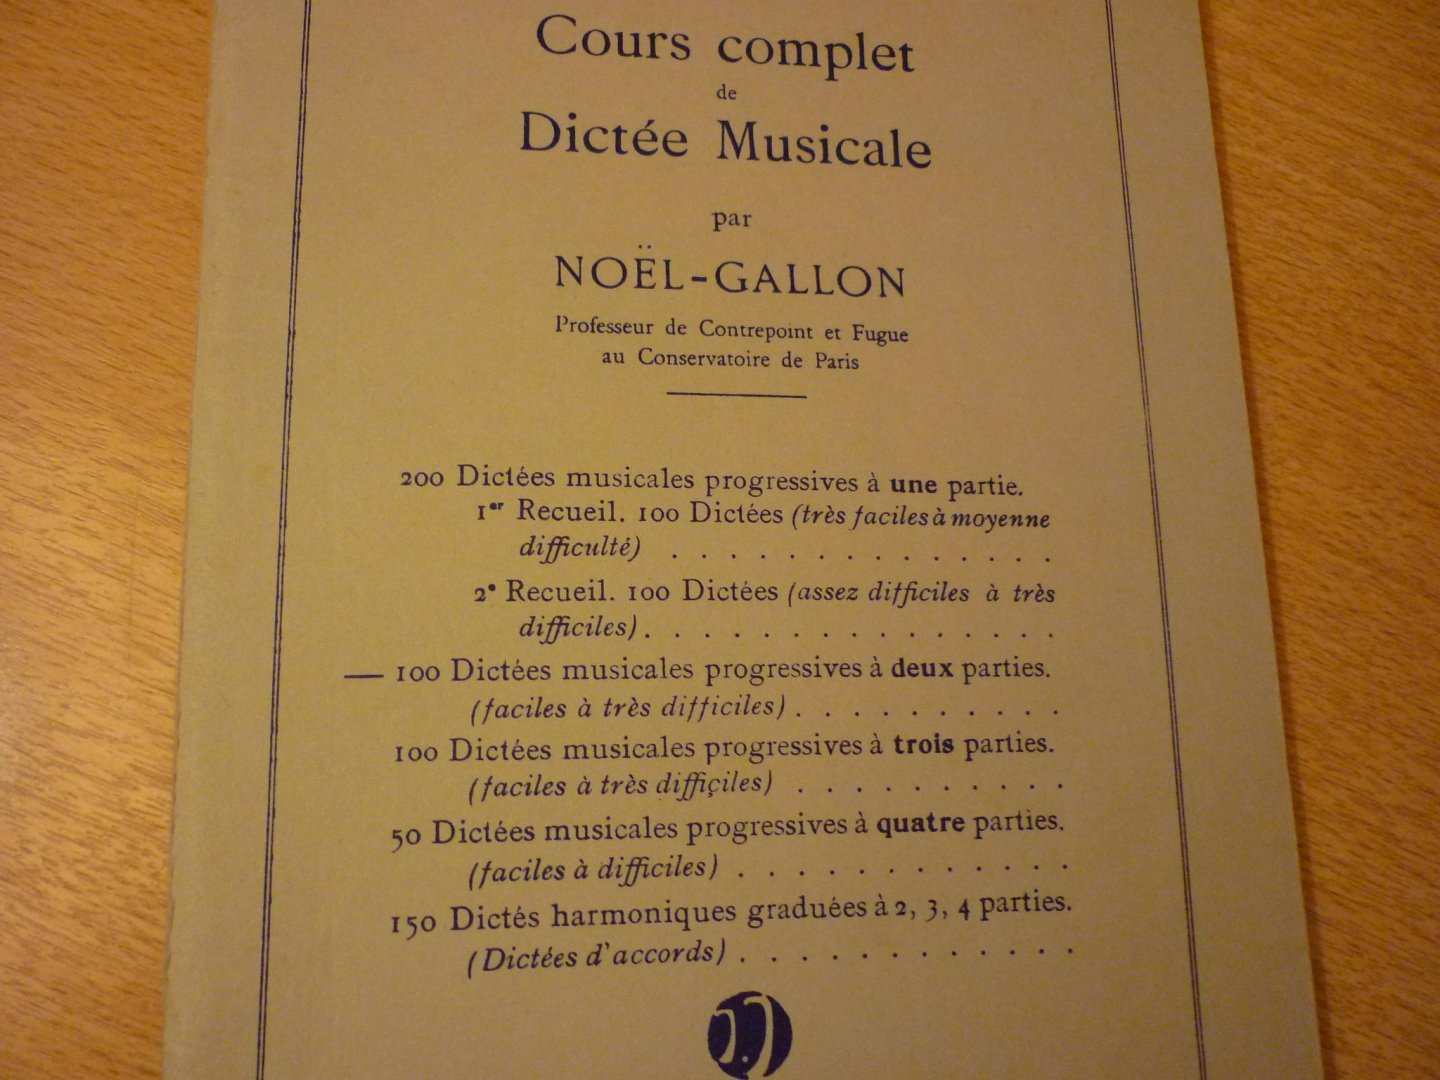 Gallon; Noel - 100 Dictées musicales à 2 parties; (Cours Complet de Dictée Musicale)